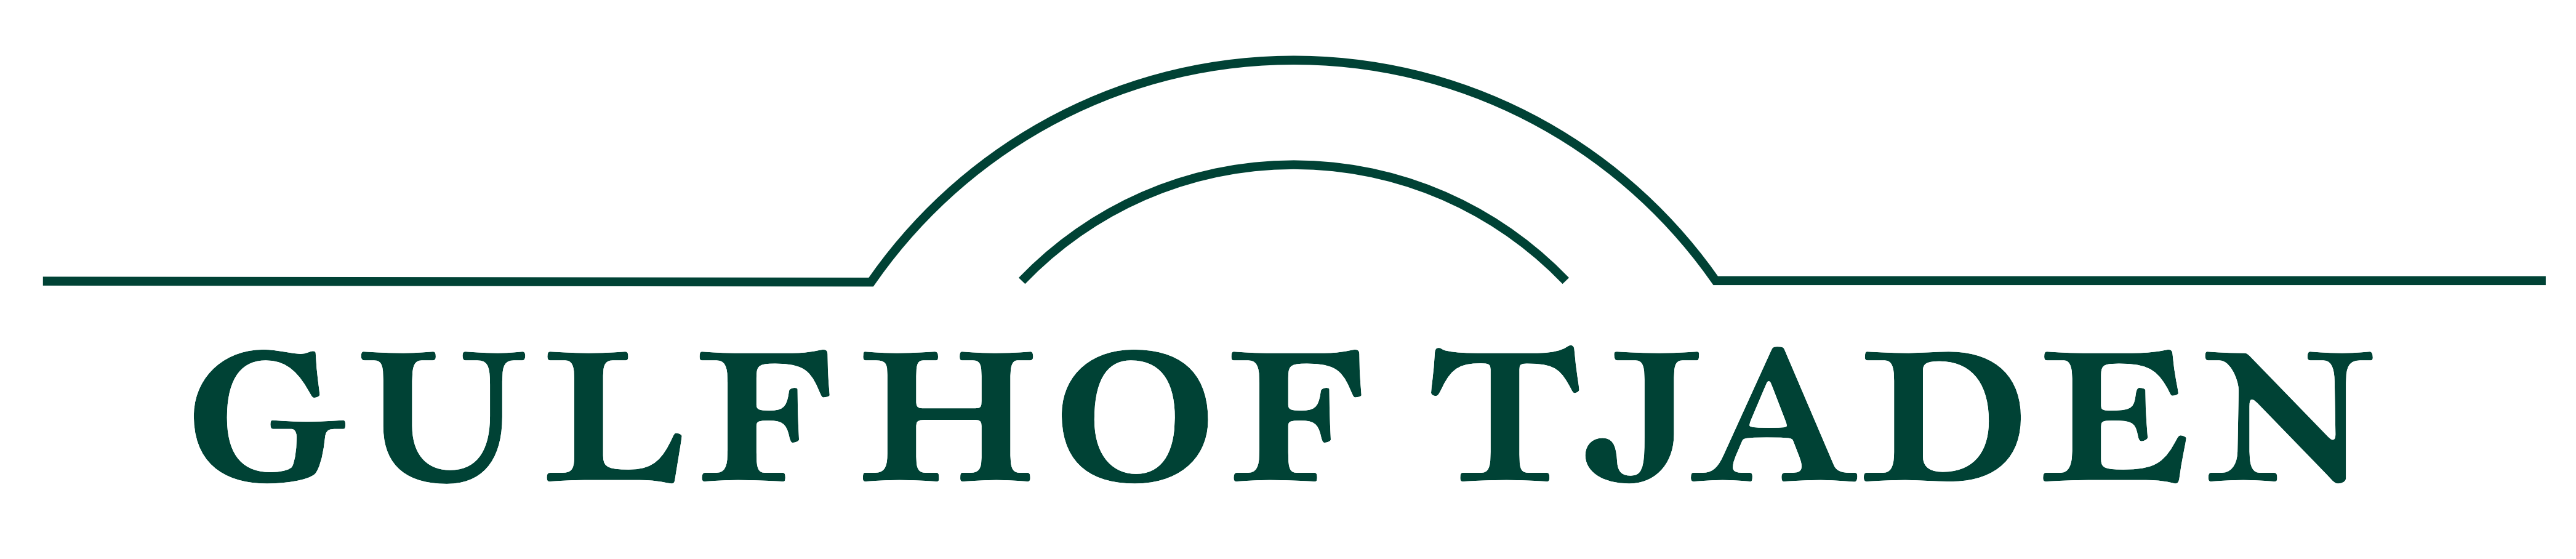 GulfhofTjaden_Logo2_grün